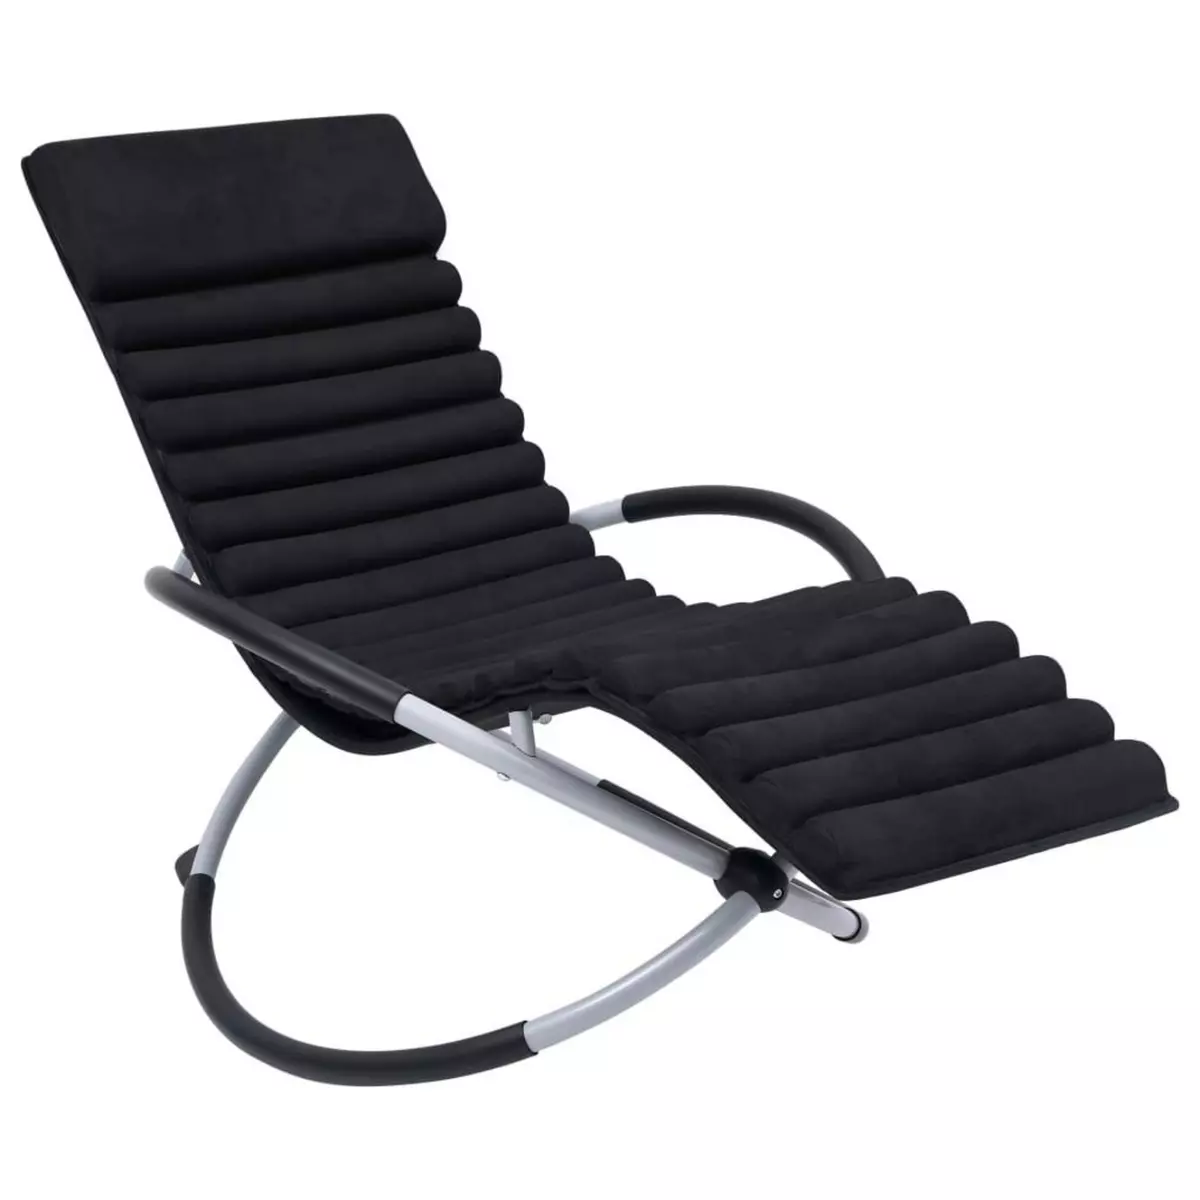 VIDAXL Chaise longue d'exterieur avec coussin Acier Noir